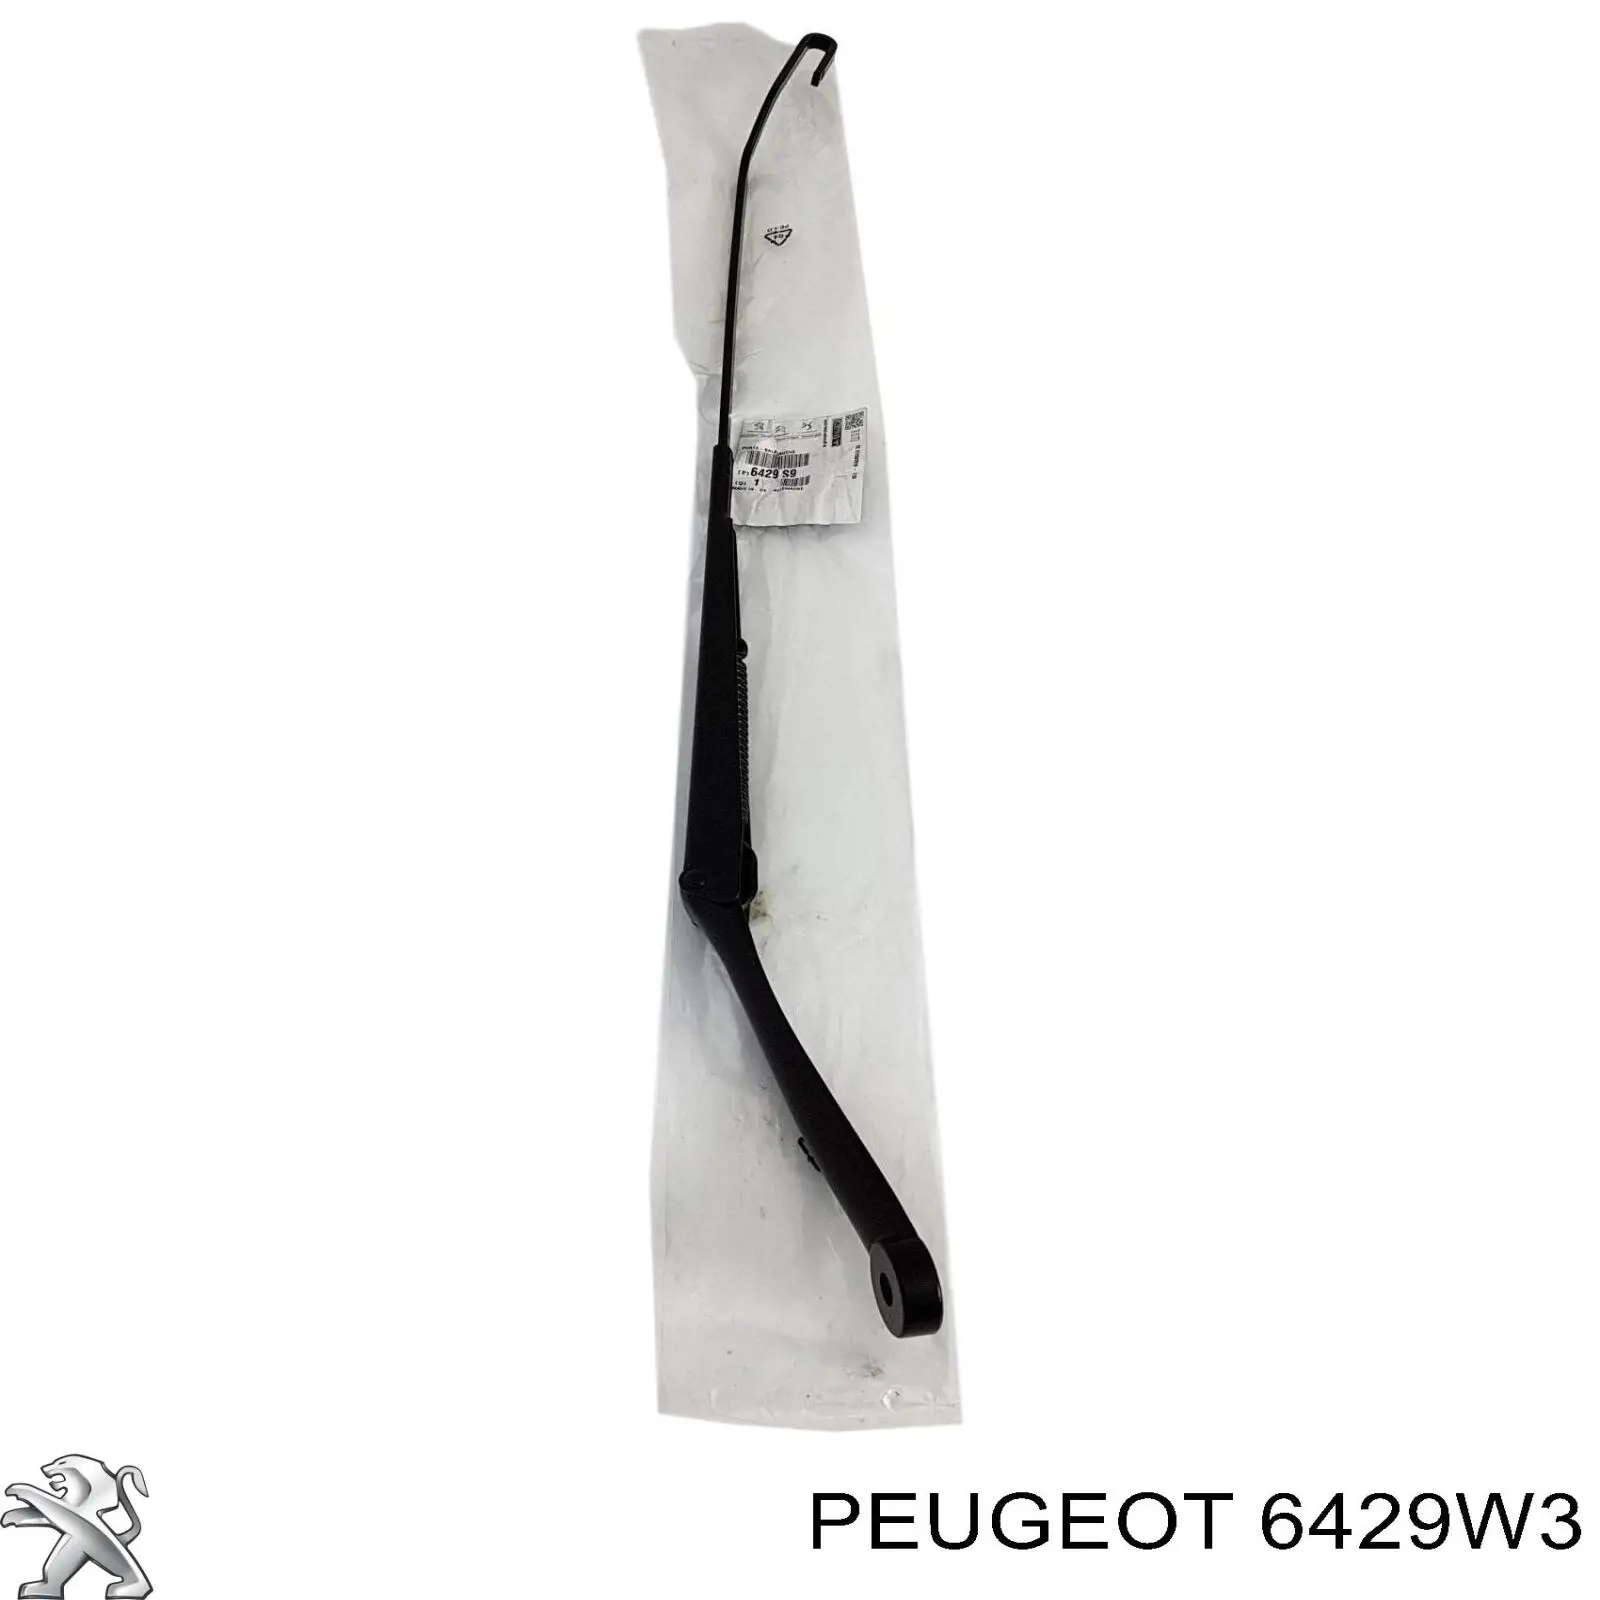 00006429W3 Peugeot/Citroen braço de limpa-pára-brisas de vidro traseiro